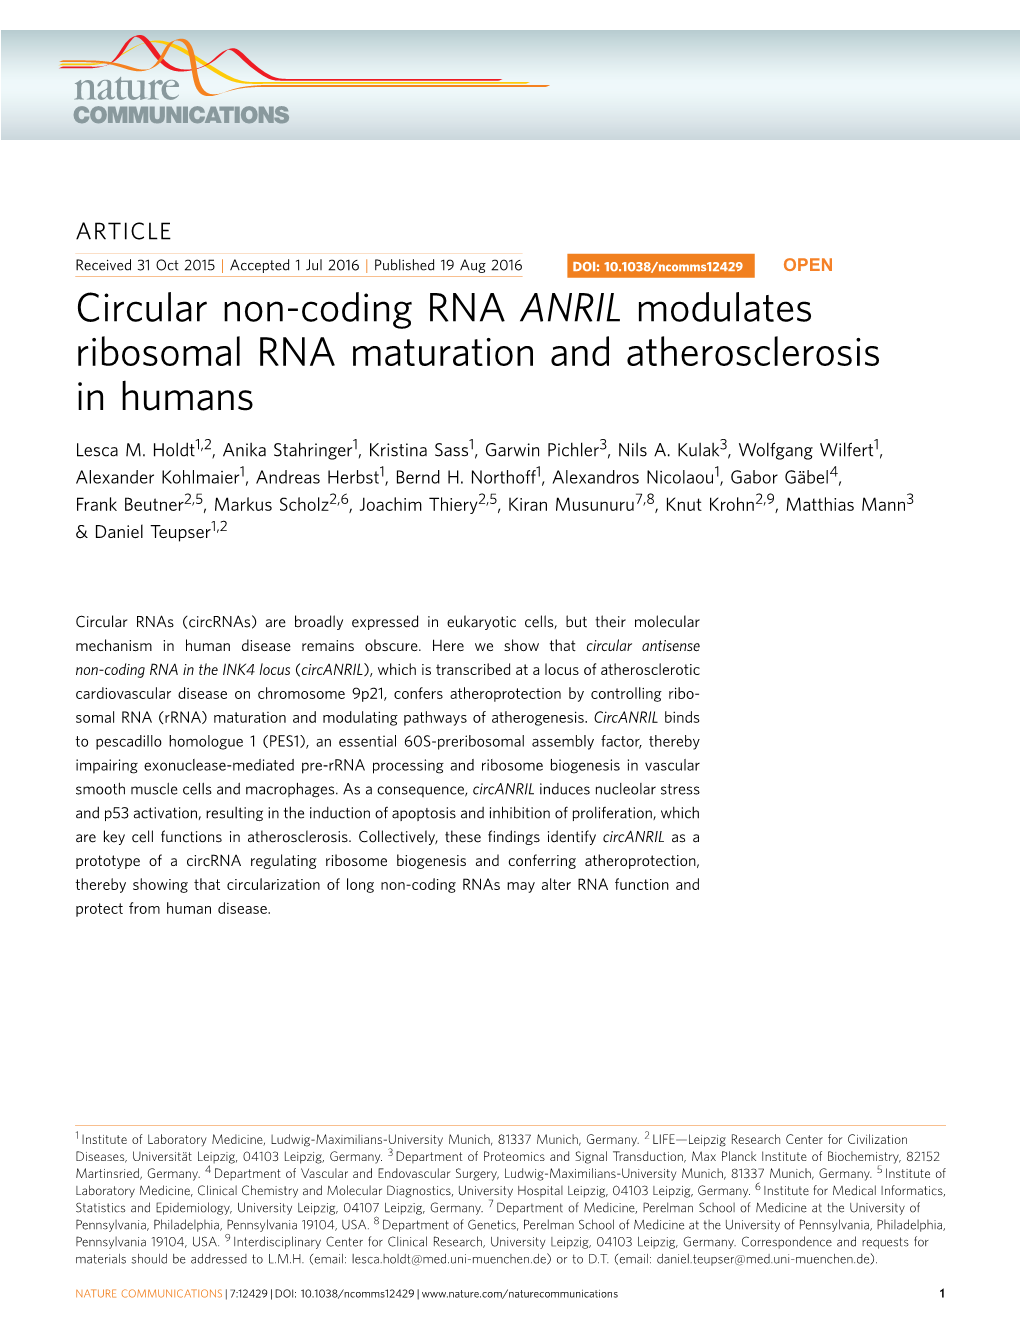 Circular Non-Coding RNA ANRIL Modulates Ribosomal RNA Maturation and Atherosclerosis in Humans